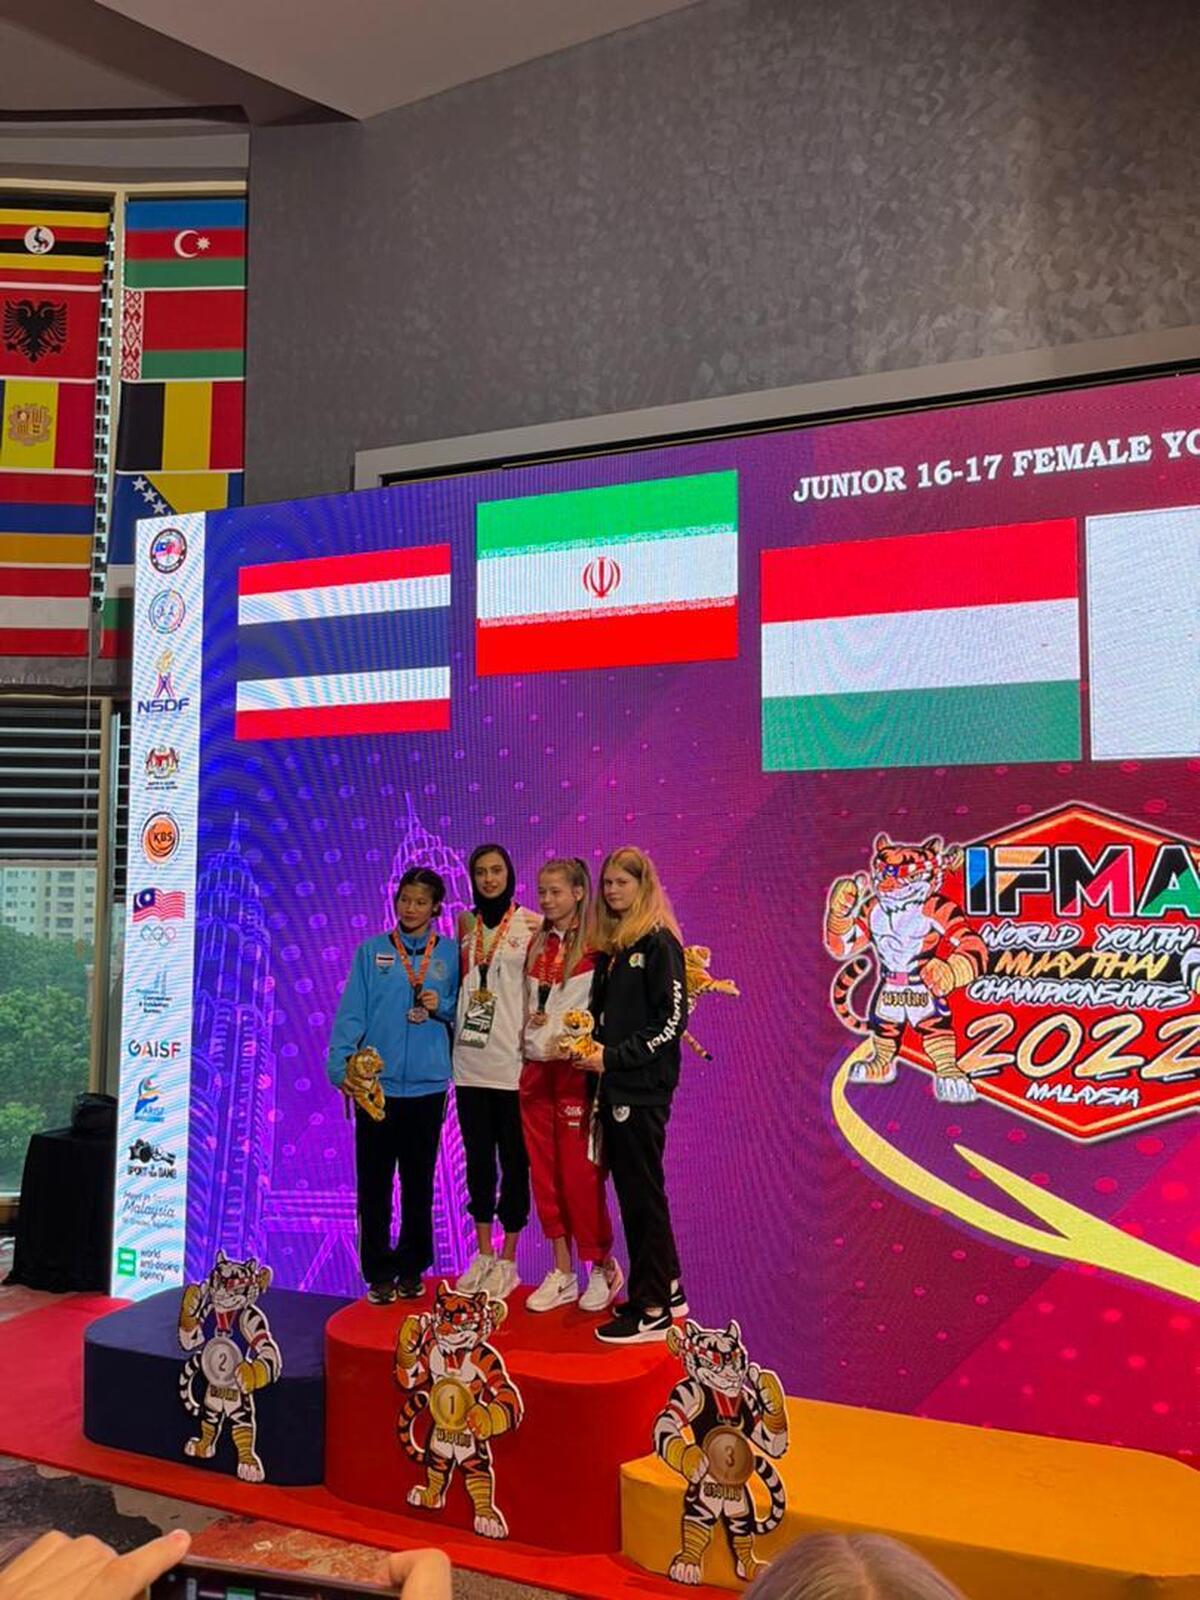 ۱۷ مدال رنگارنگ، رهاورد جوانان موی تای ایران از مسابقات جهانی مالزی ۲۰۲۲